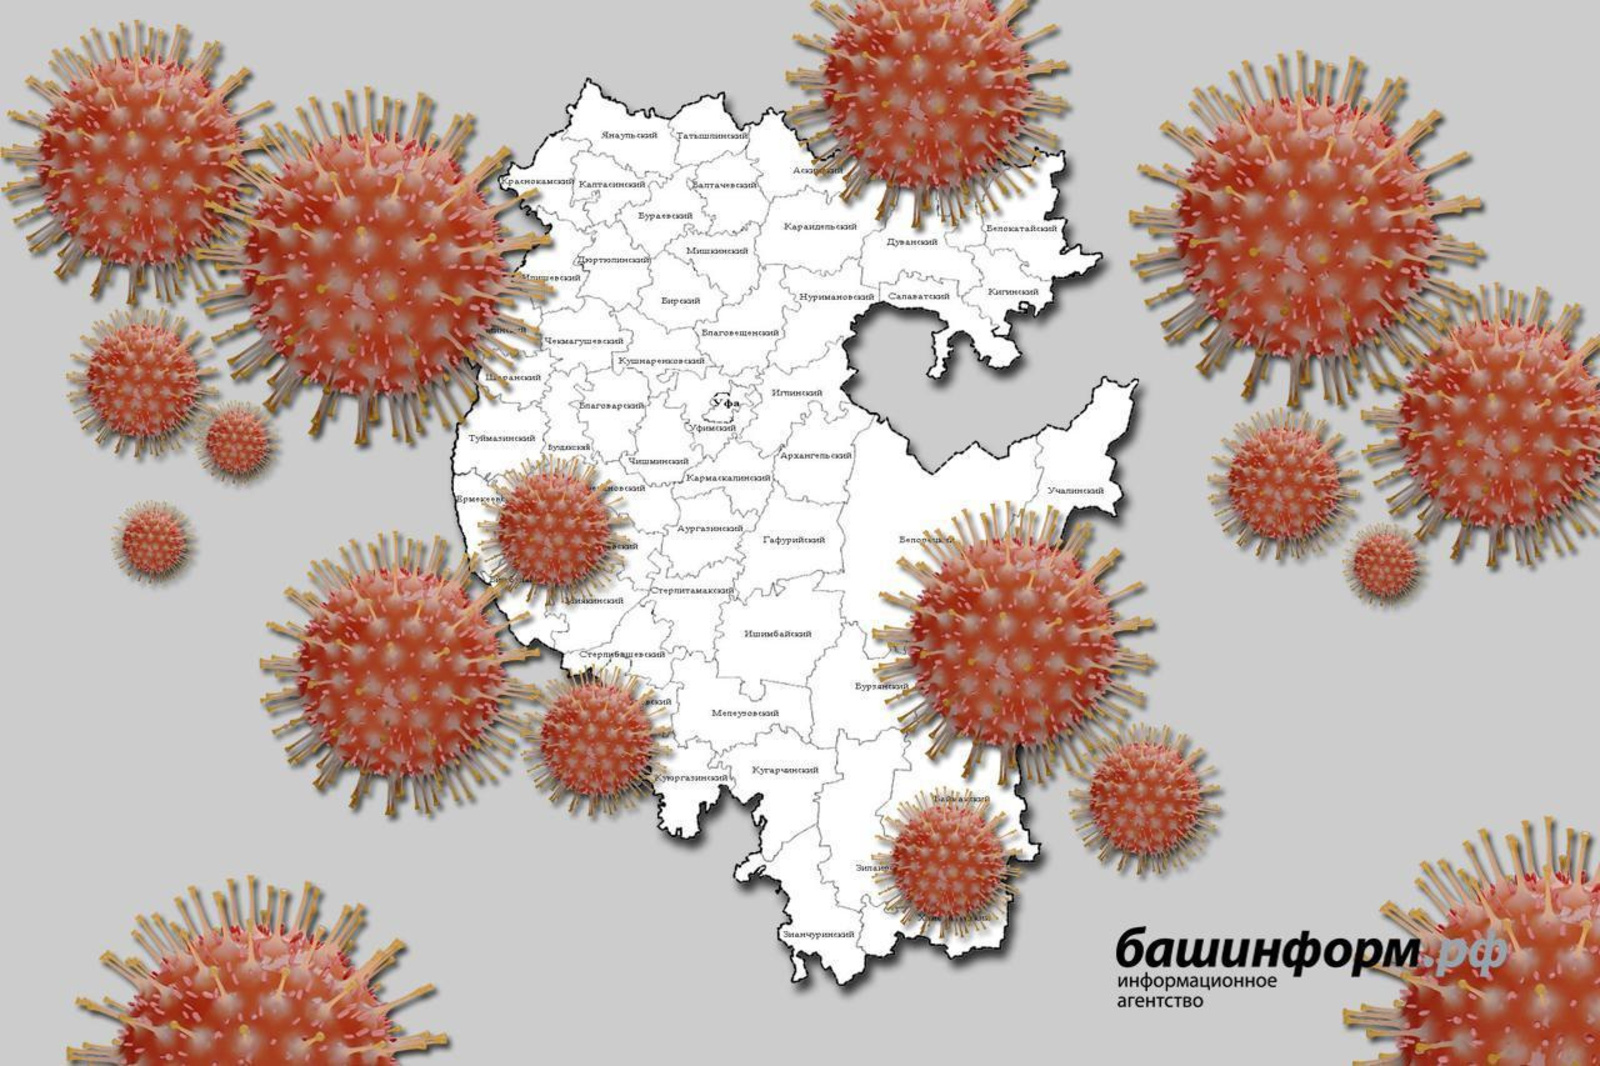 Радий Хабиров: «Ситуация с коронавирусом в республике относительно стабильная, но нужно принимать непопулярные меры»